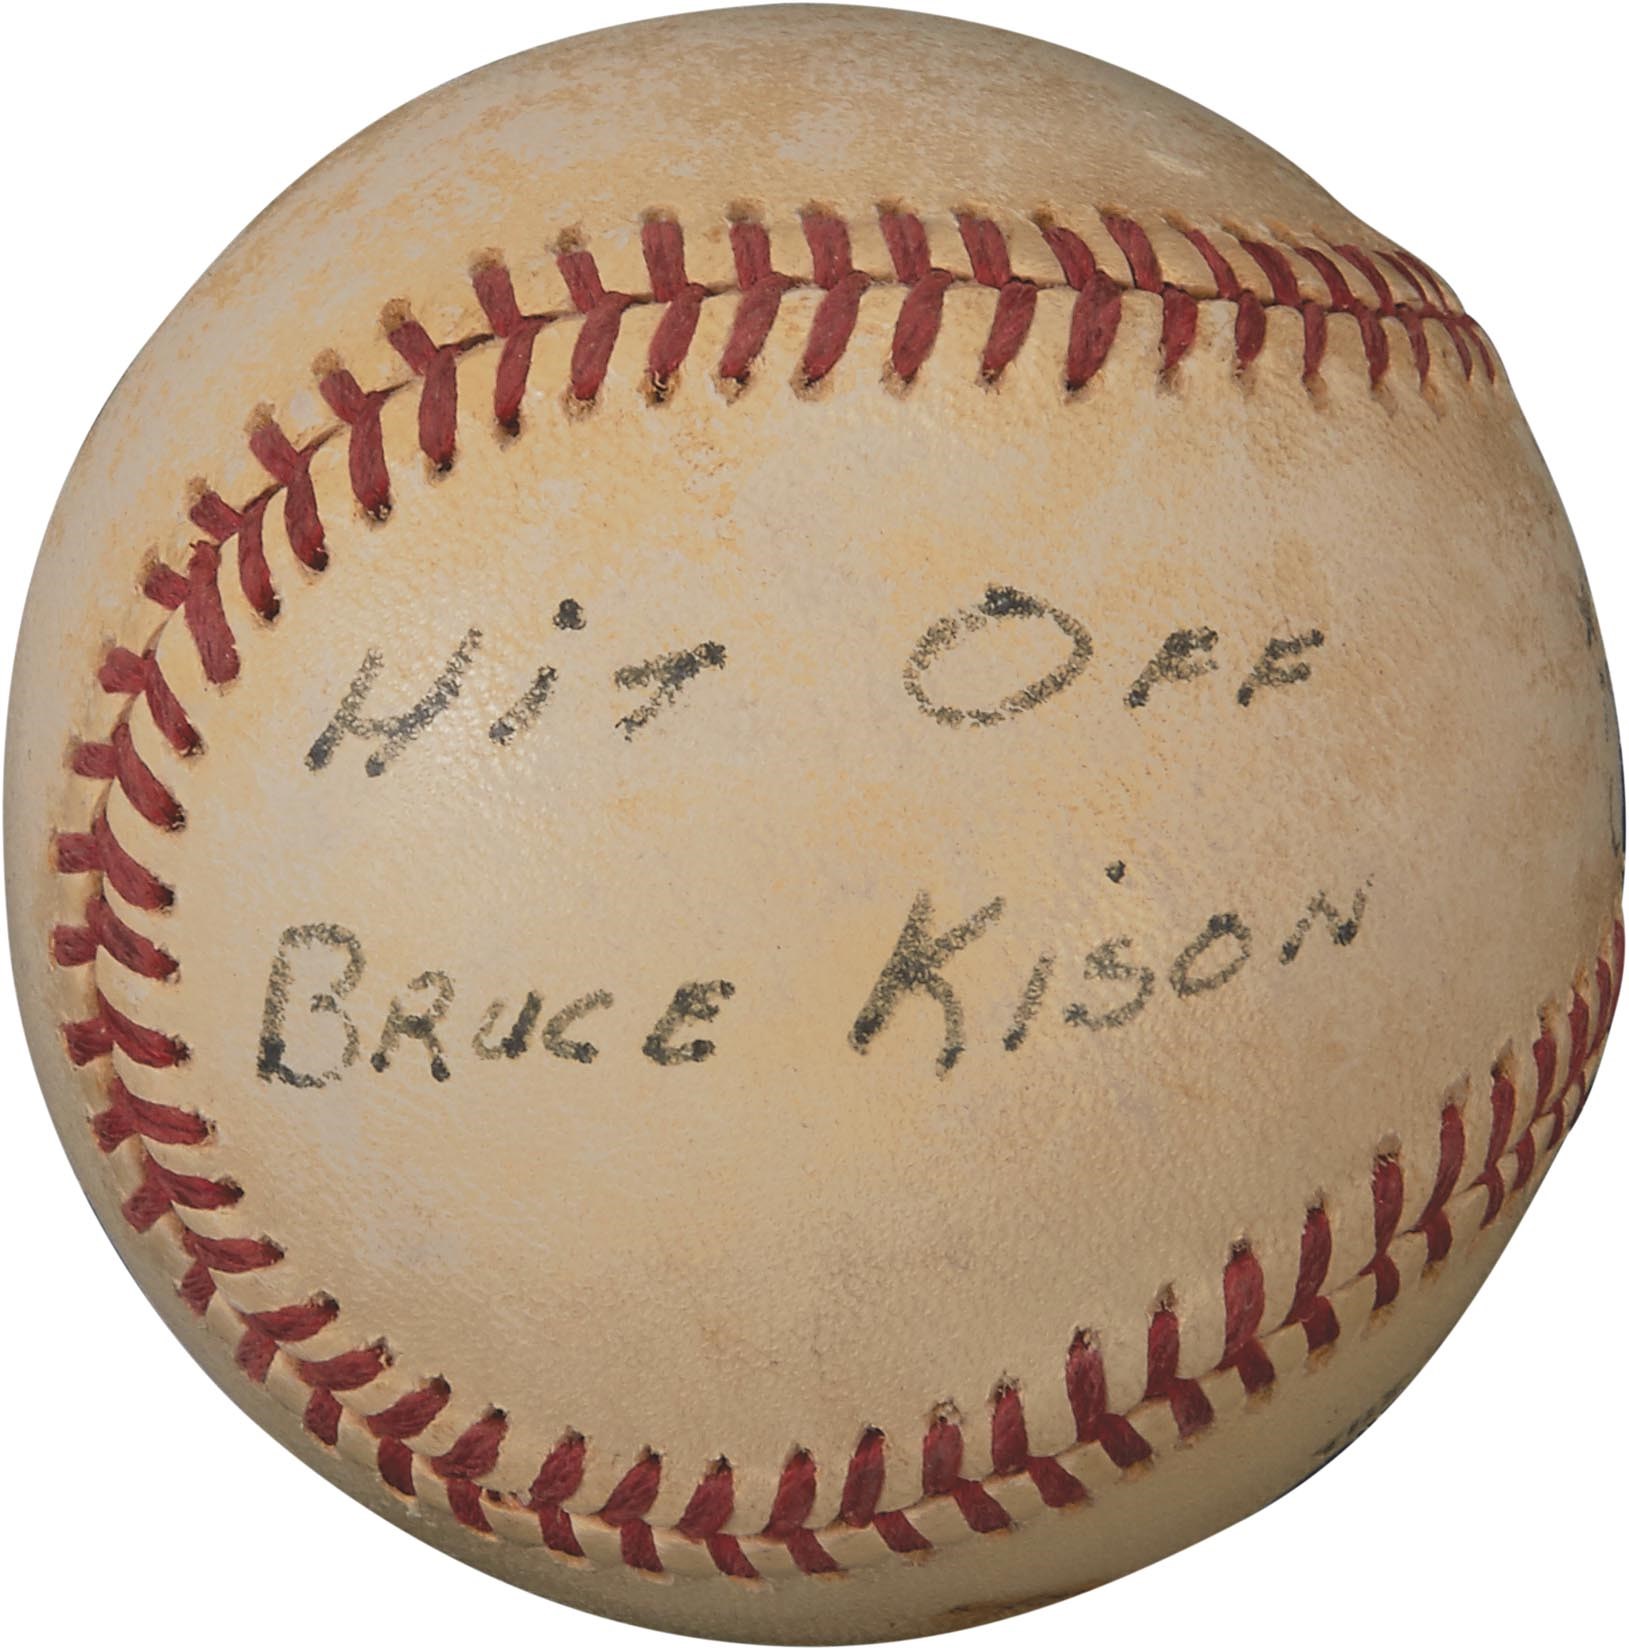 Pete Rose & Cincinnati Reds - Pete Rose 2,500th Career Hit Baseball